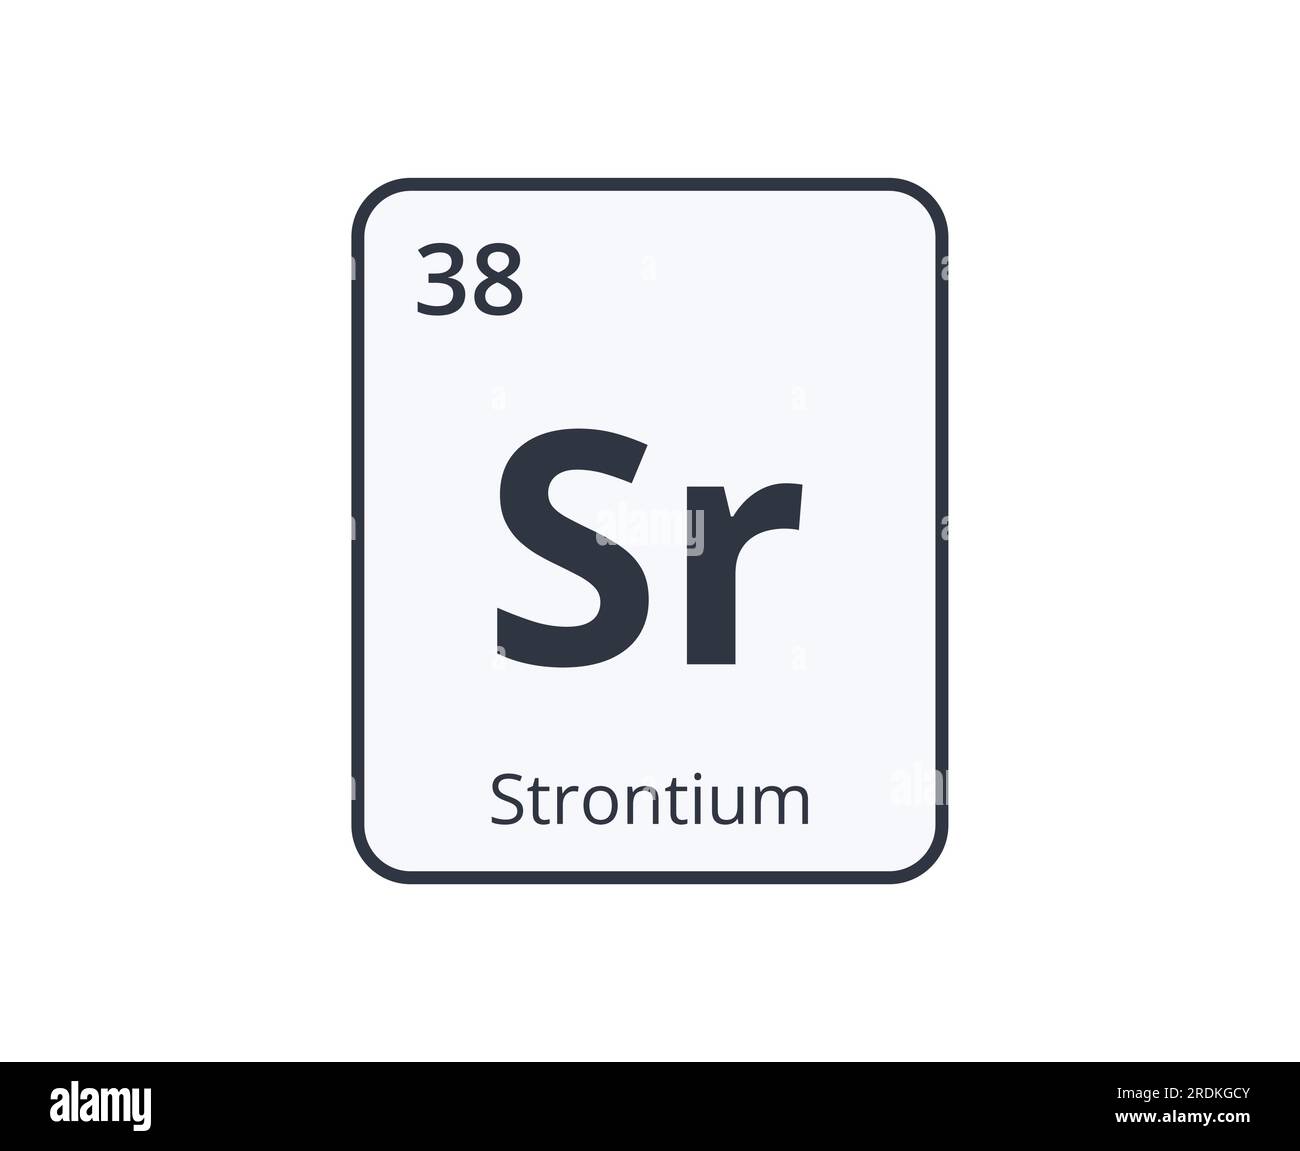 Strontium Element Symbol. Graphic for Science Designs Stock Vector ...